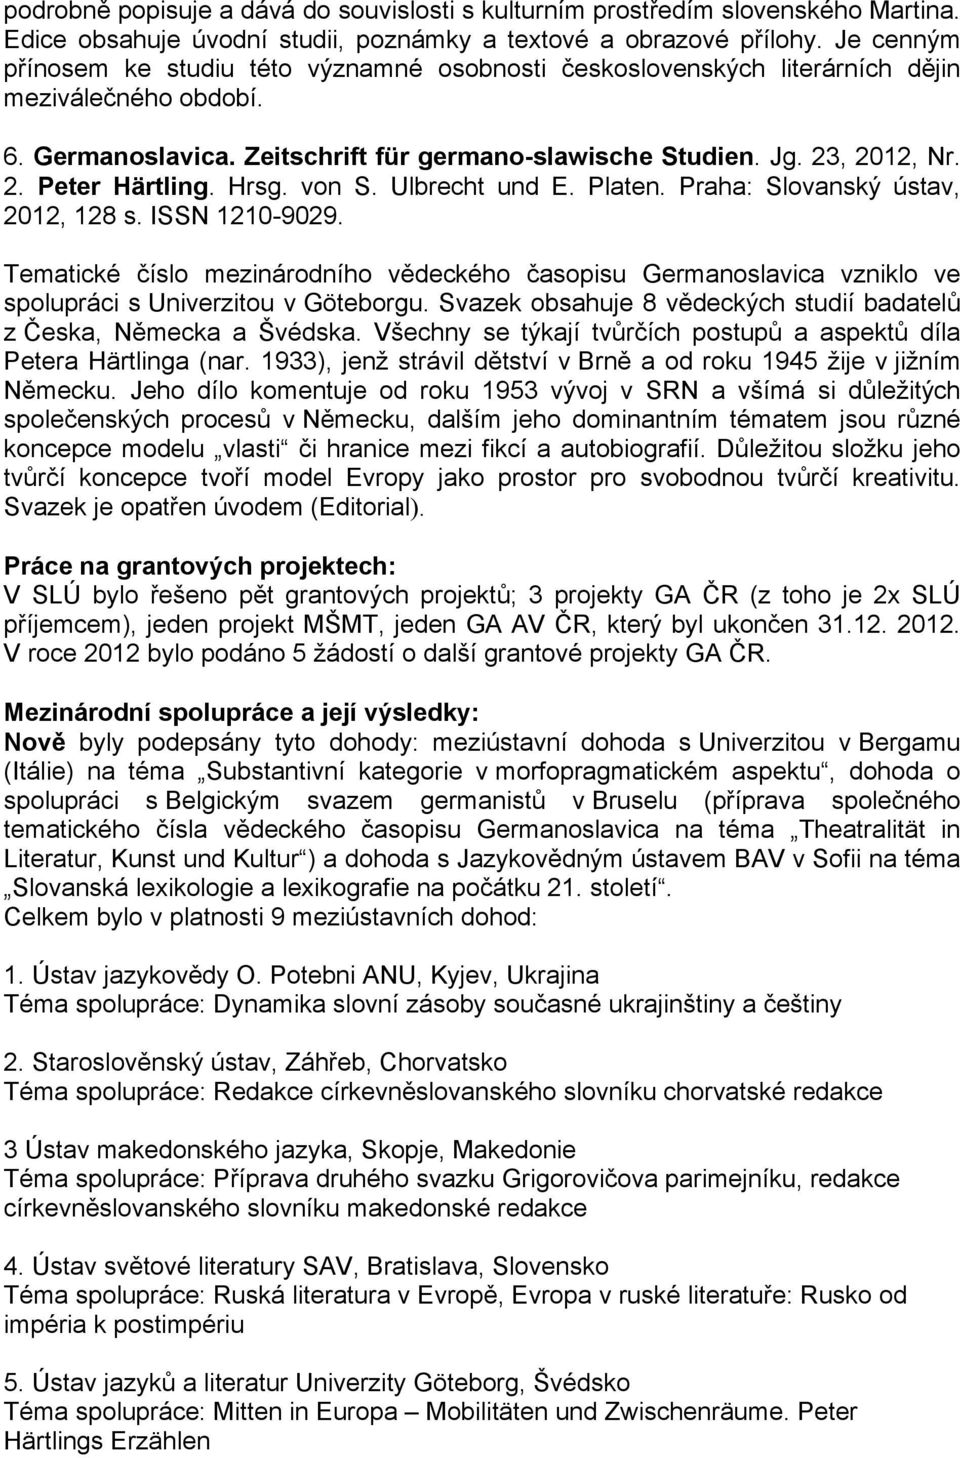 Hrsg. von S. Ulbrecht und E. Platen. Praha: Slovanský ústav, 2012, 128 s. ISSN 1210-9029.